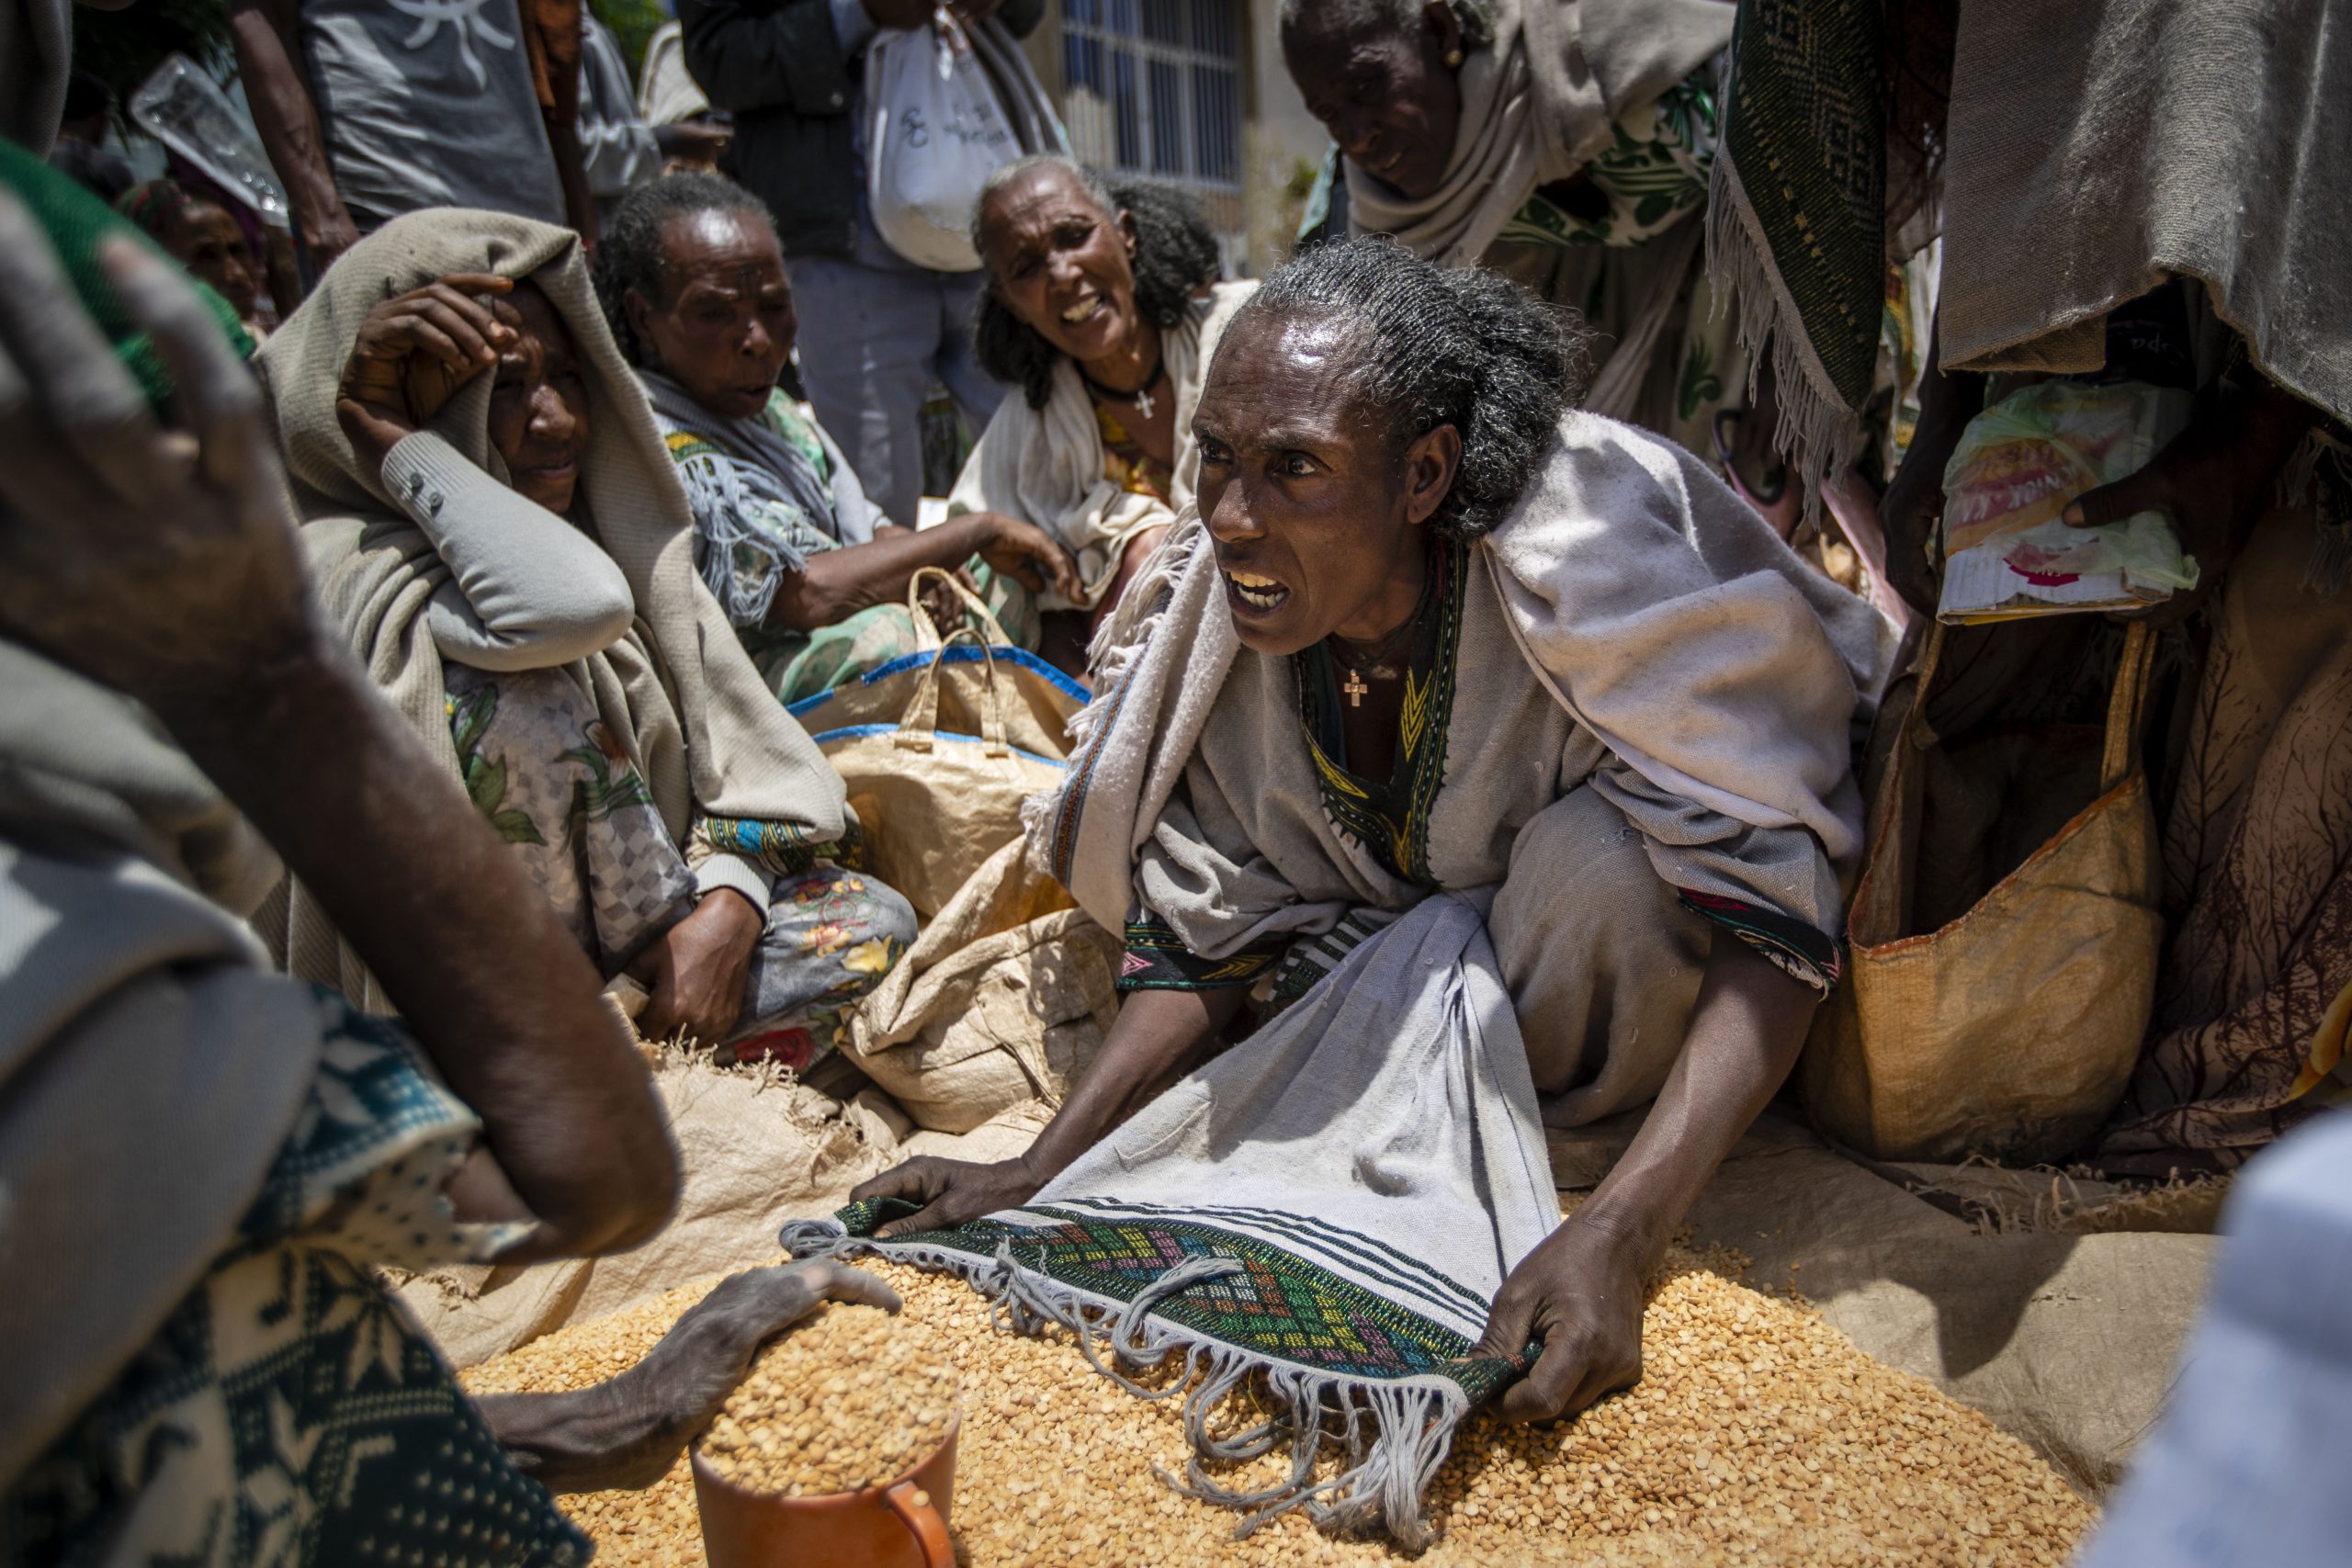 埃塞俄比亚战乱地区严重缺粮 传女性出卖身体求生